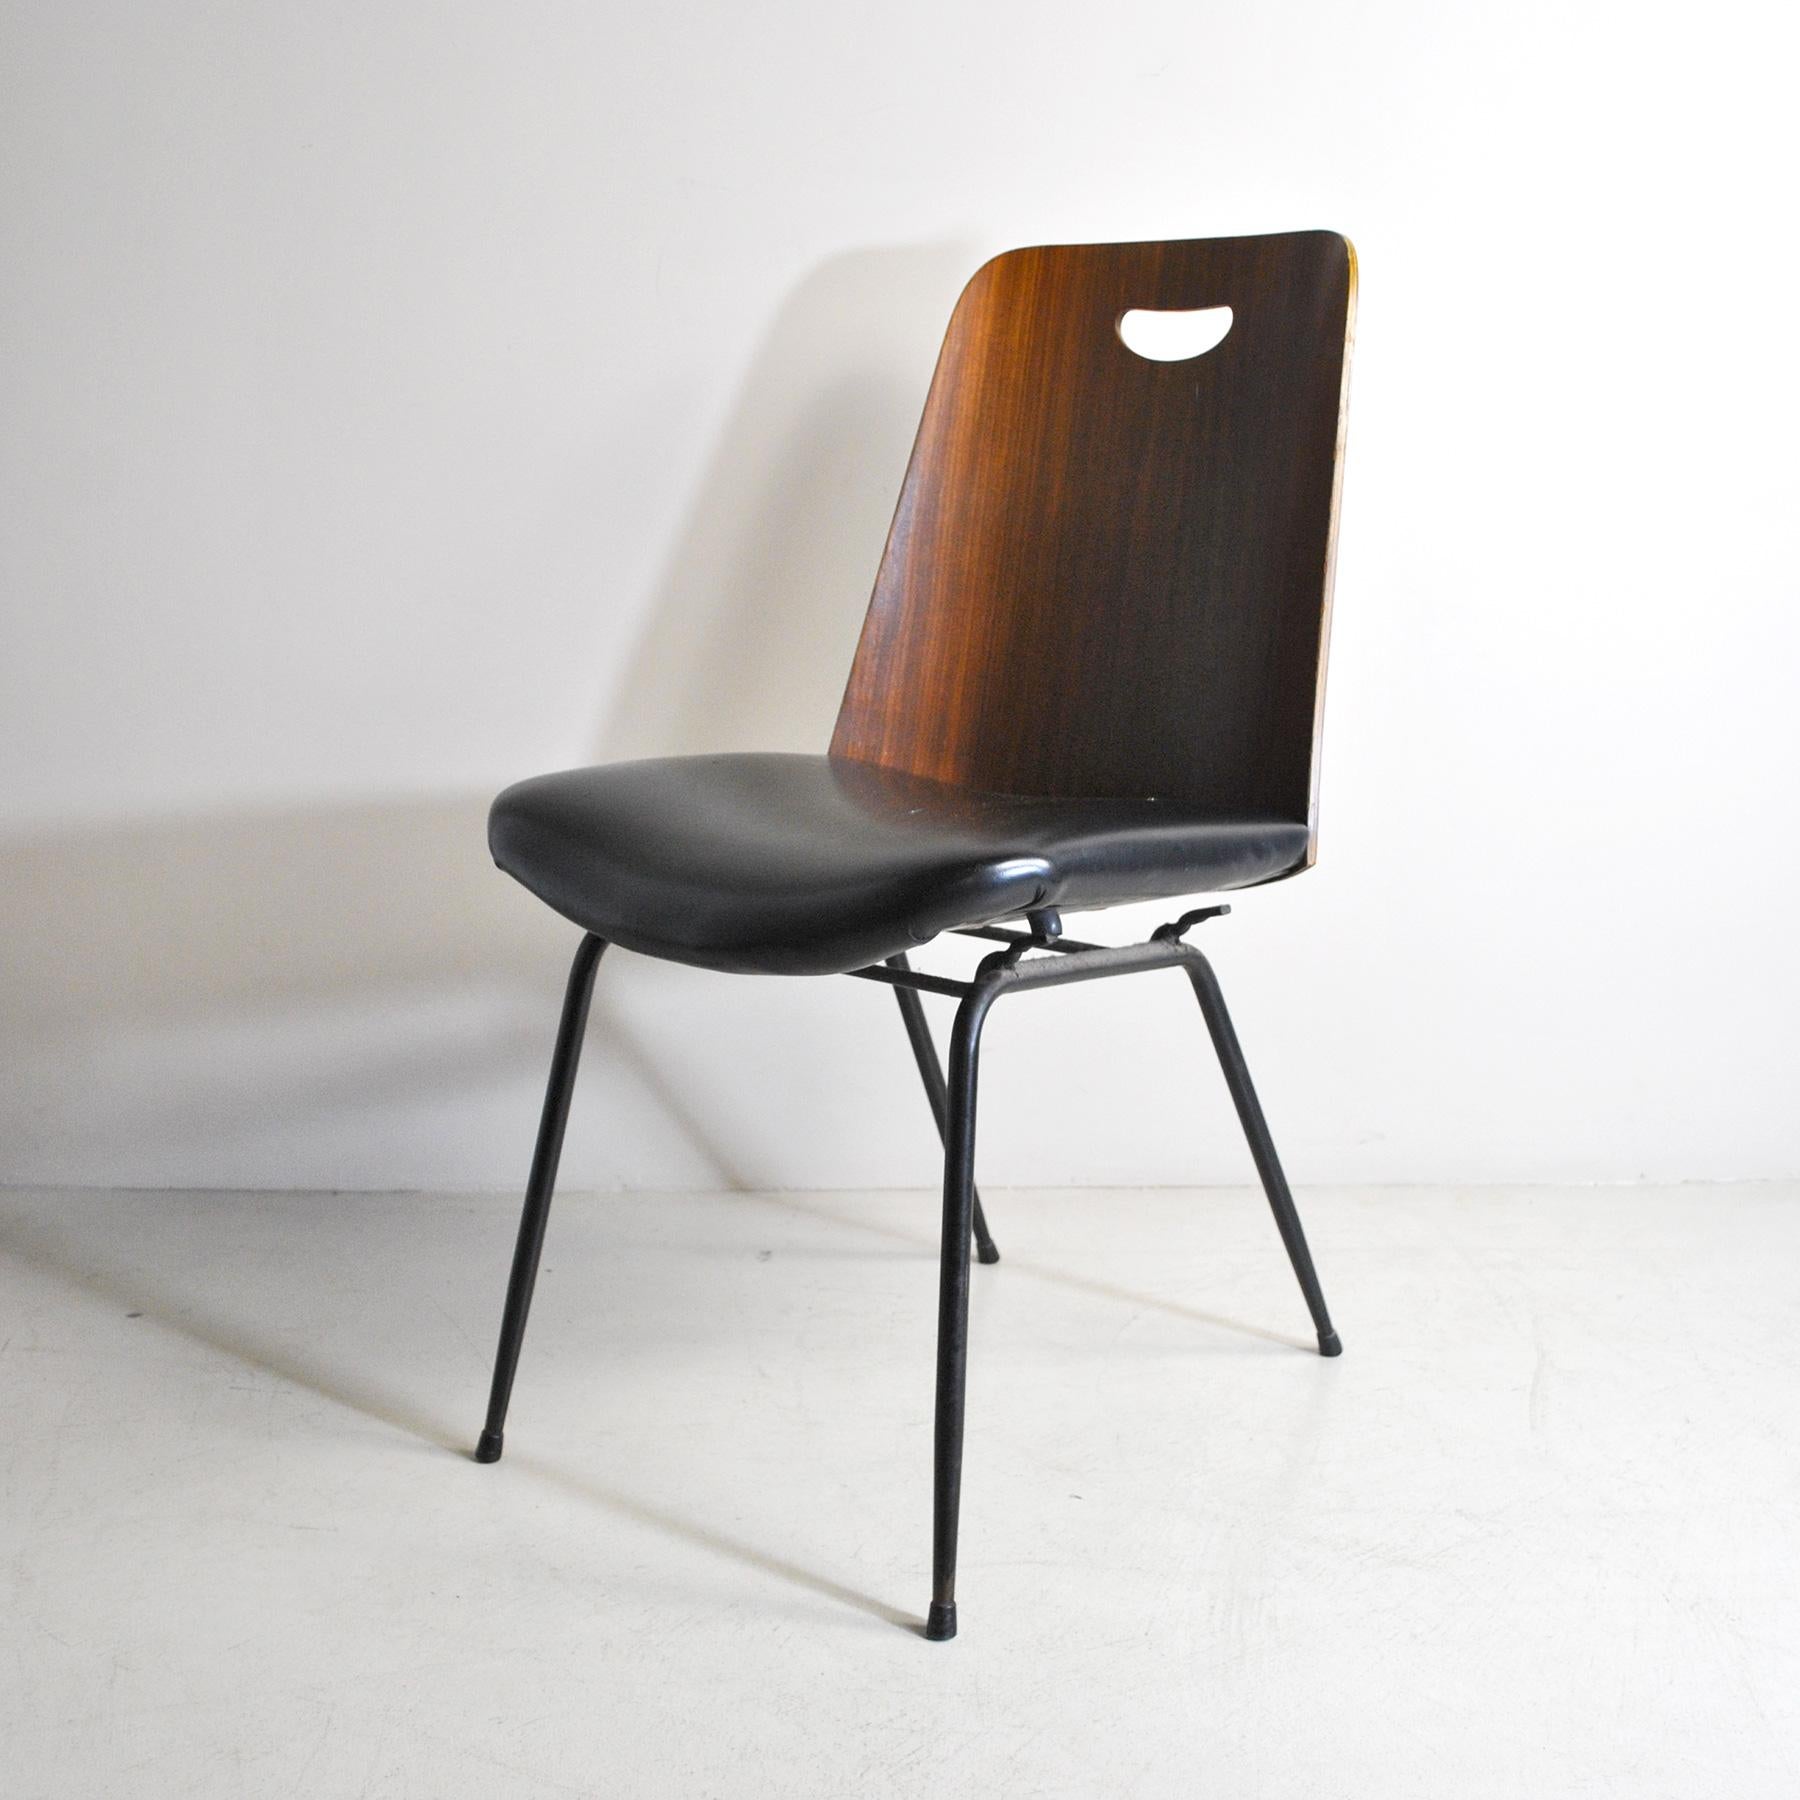 Einzelner Stuhl, hergestellt von Rima in den 1950er Jahren, Modell DU 22, entworfen von Gastone Rinaldi.